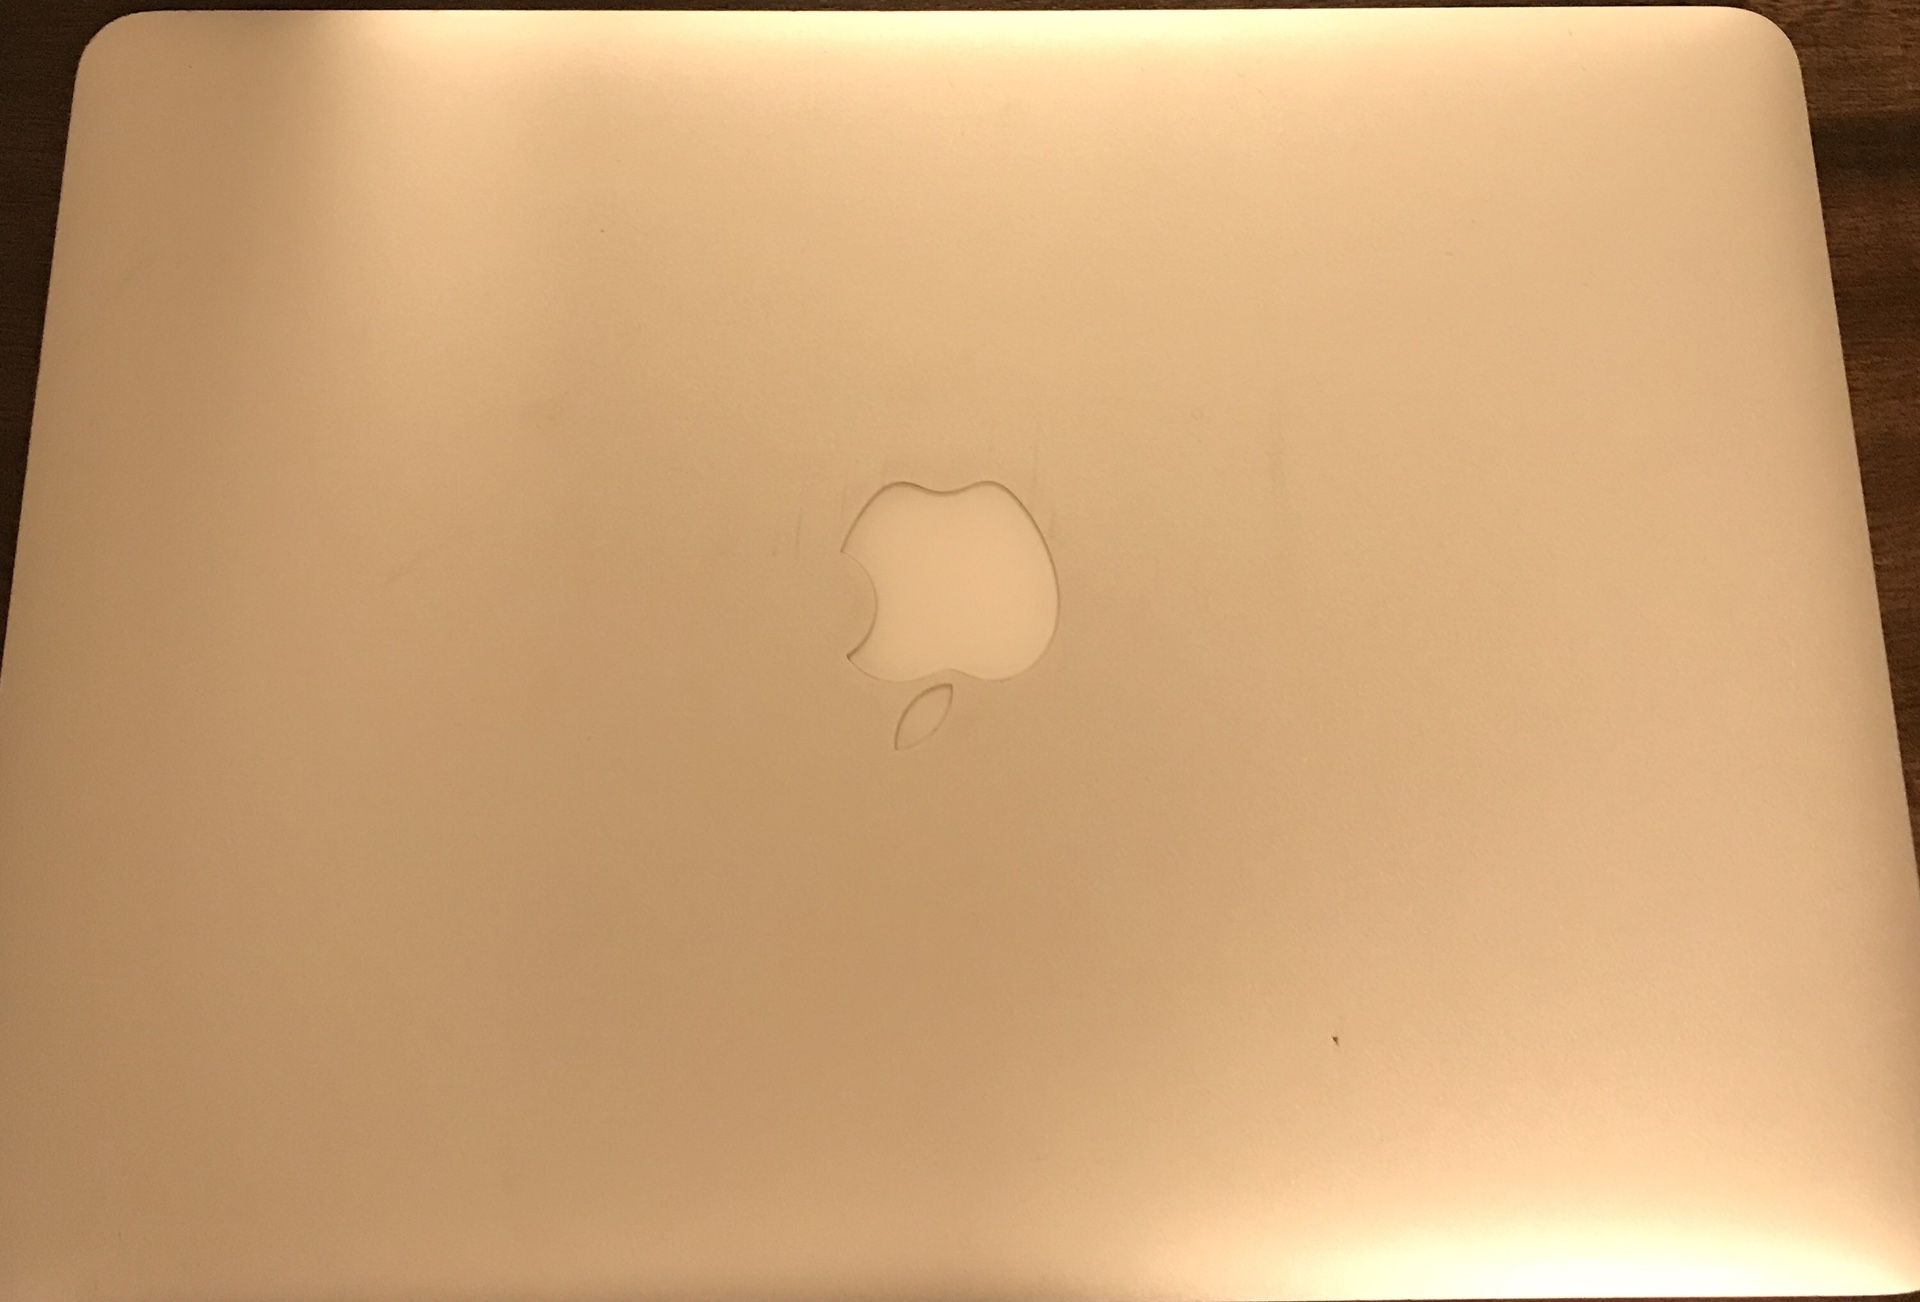 MacBook Air, 13” (2015) - read description